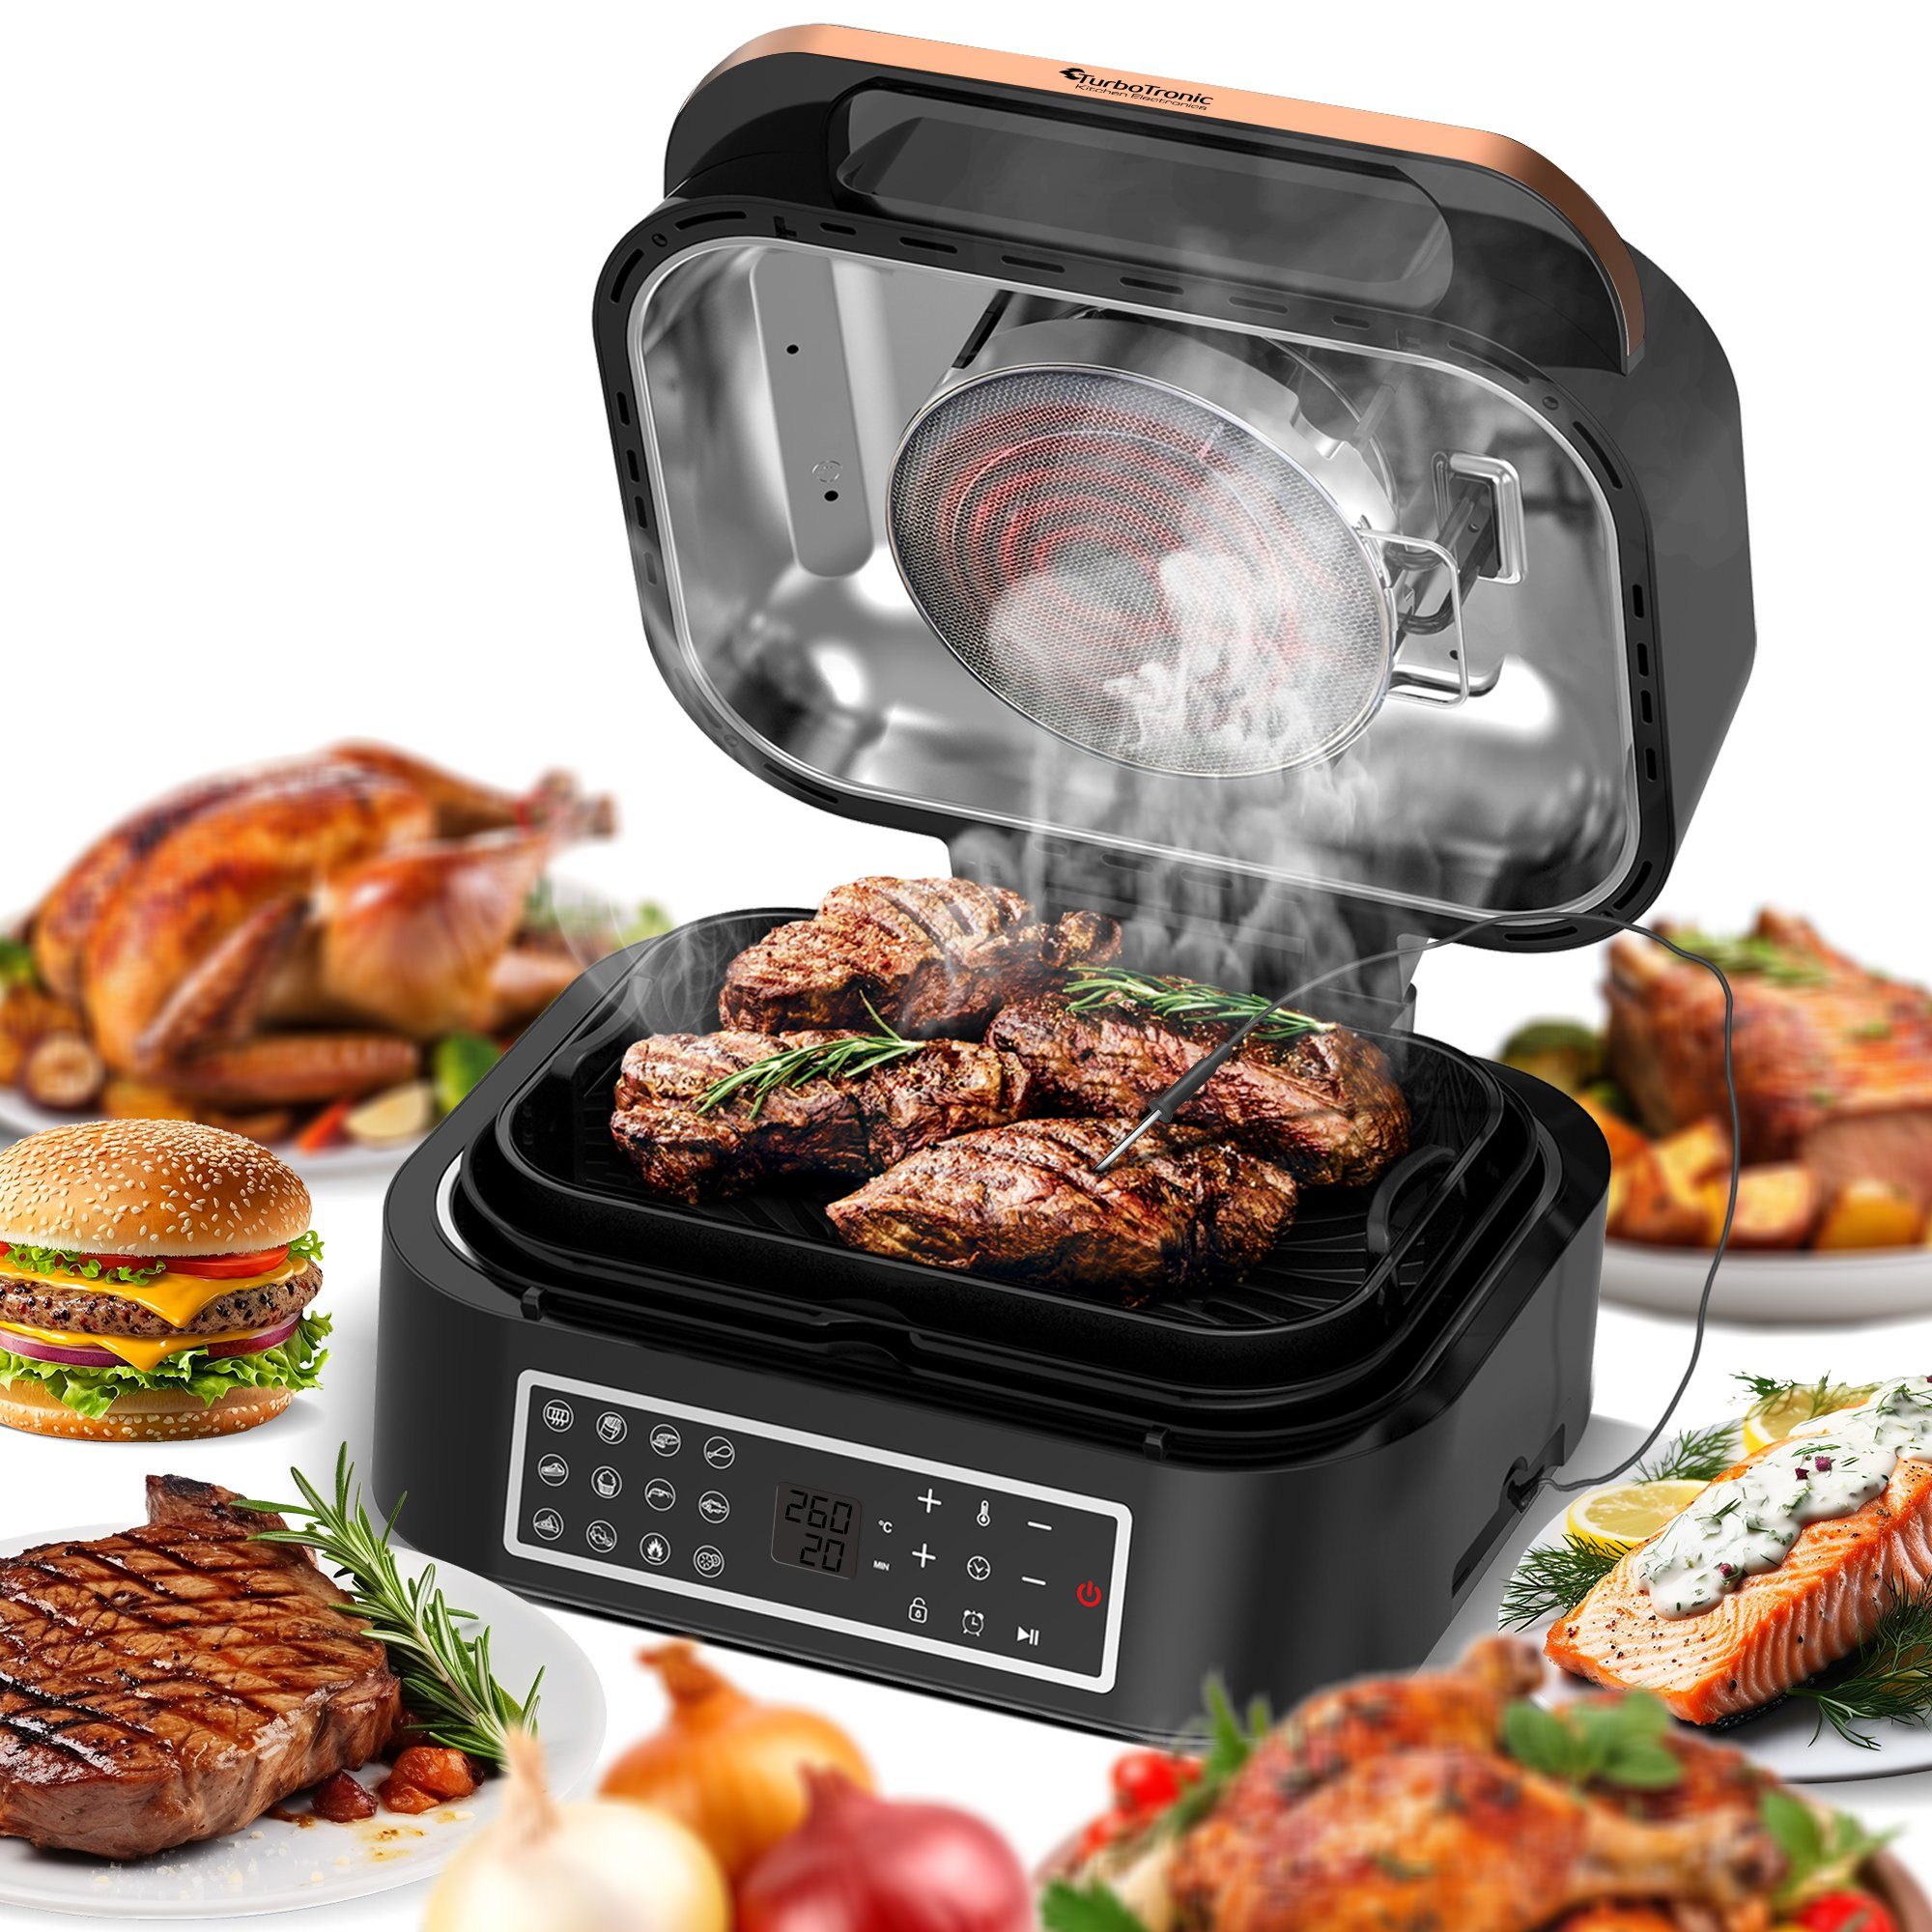 TurboTronic by Z-Line Heißluftfritteuse bis 260°C Food Grill mit digitalem Temperaturfühler 6,5 L Volumen, 1800 W, Tischgrill mit Crisper Plate Steakgrill schwarz/kupfer